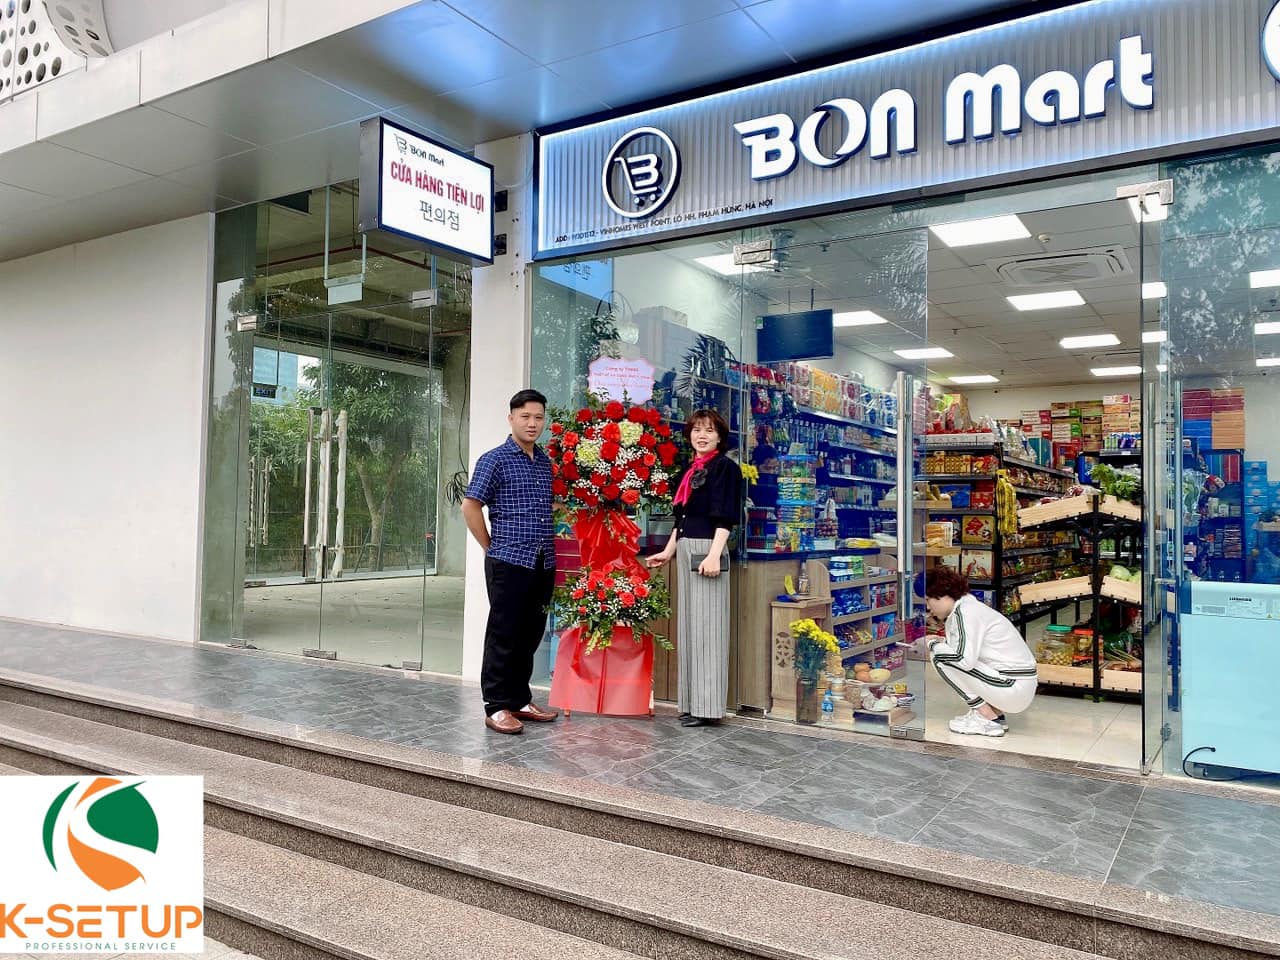 Tưng bừng khai trương siêu thị Bon Mart tại Hà Nội - Công ty thiết kế setup siêu thị K-setup